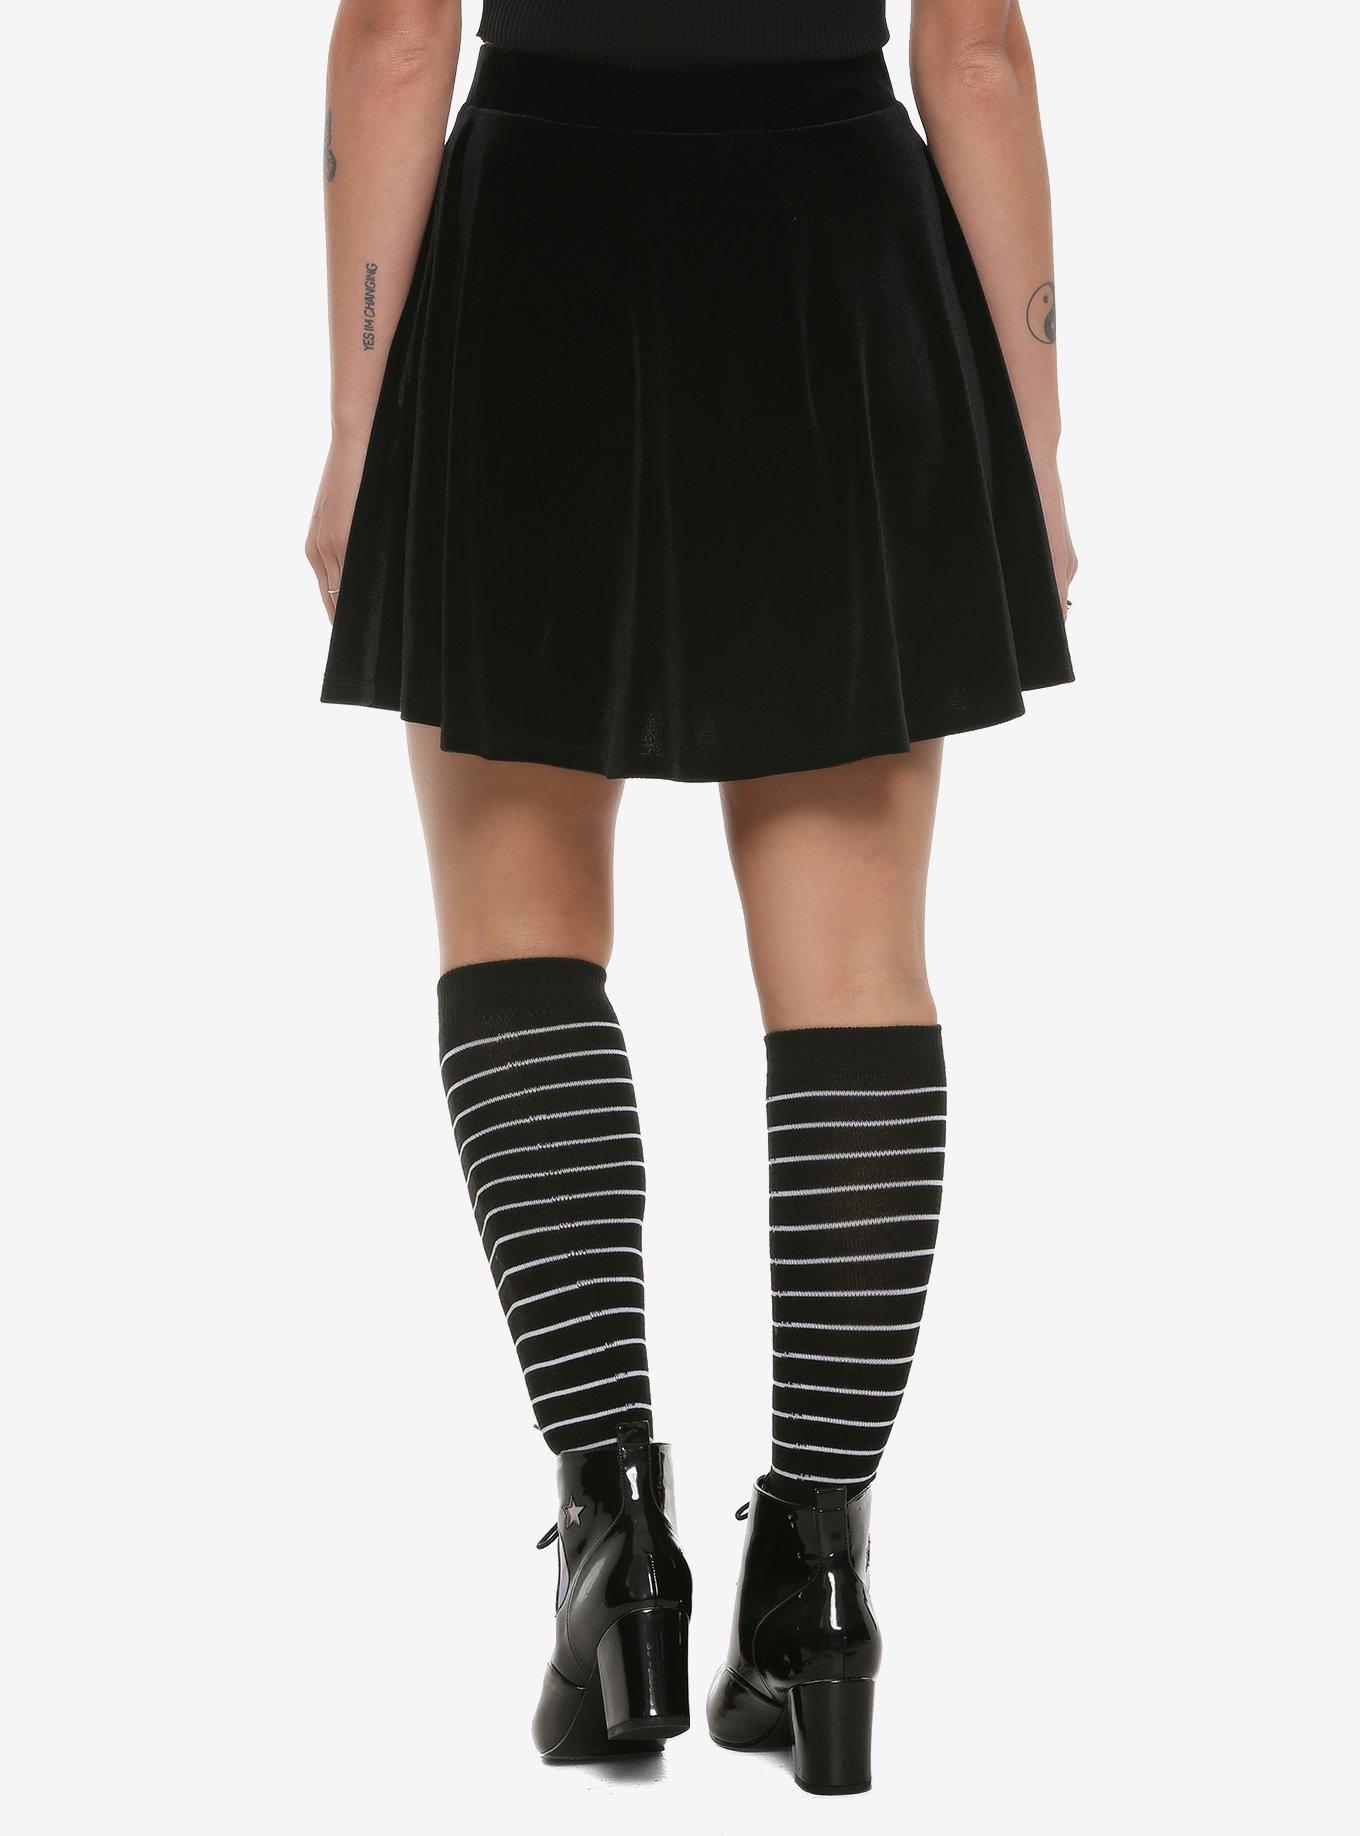 Black Velvet Lace-Up Skater Skirt, BLACK, alternate